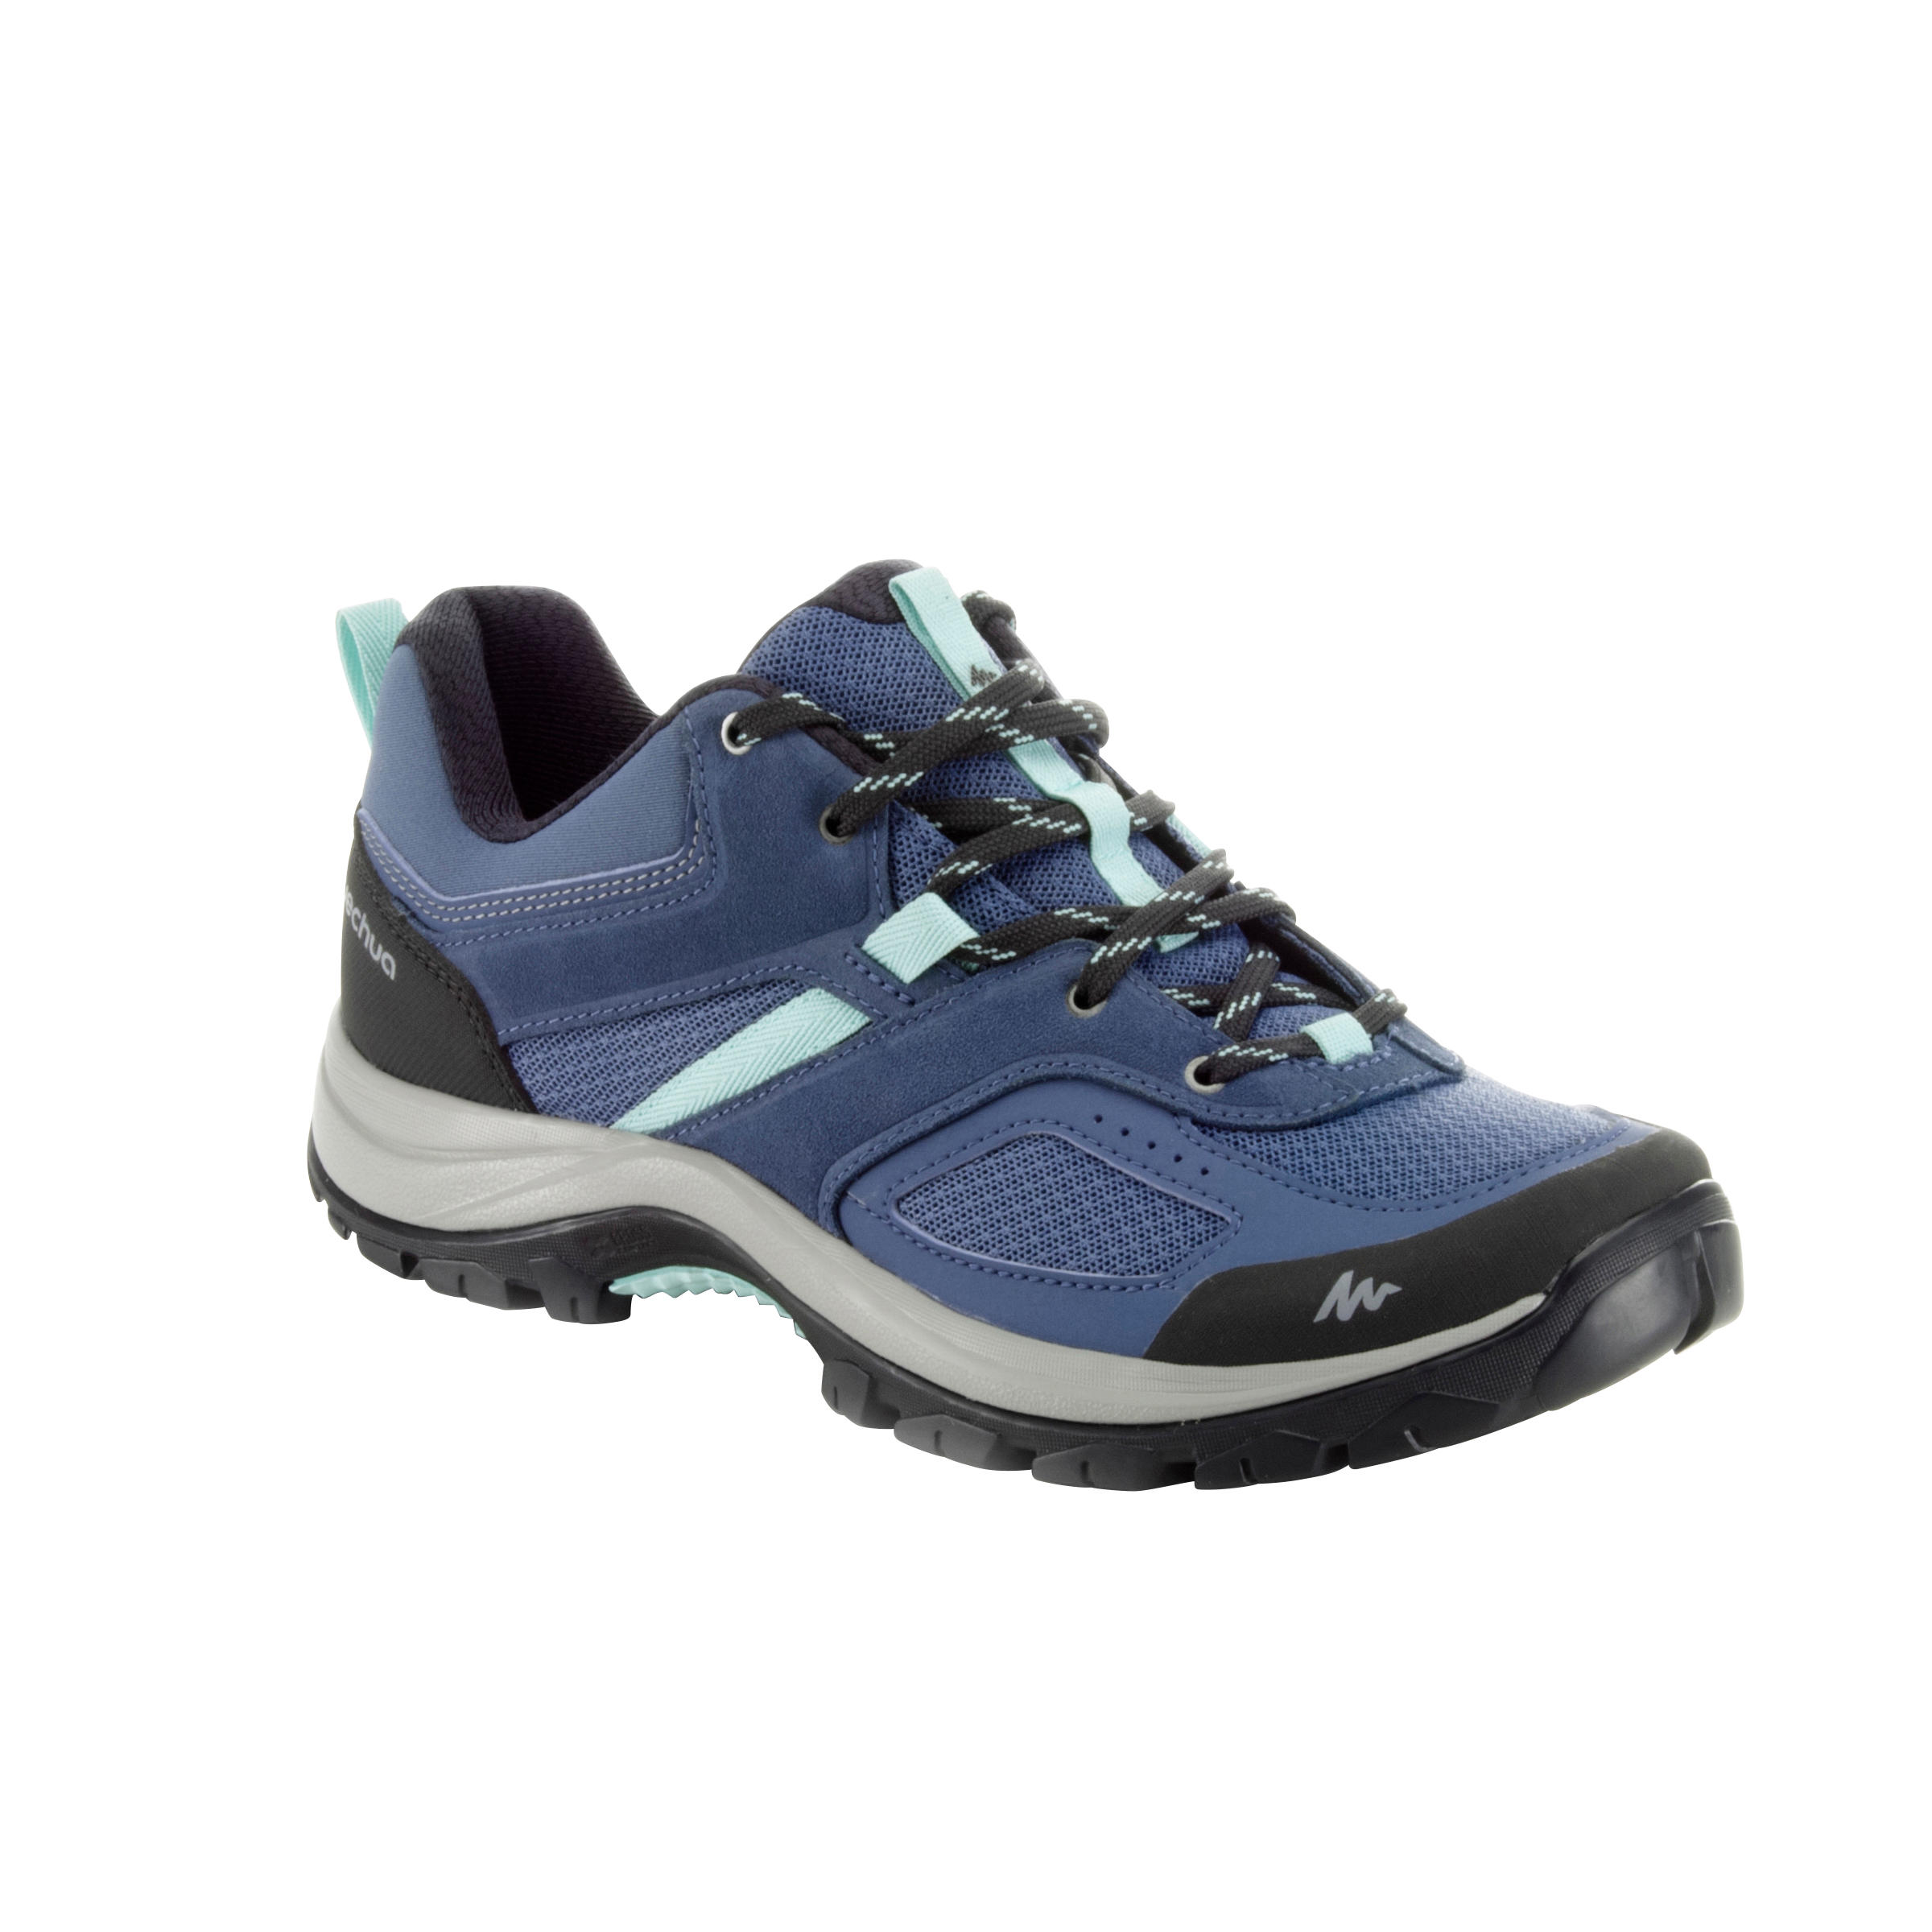 QUECHUA Women's mountain Walking Shoes - MH100 - Blue